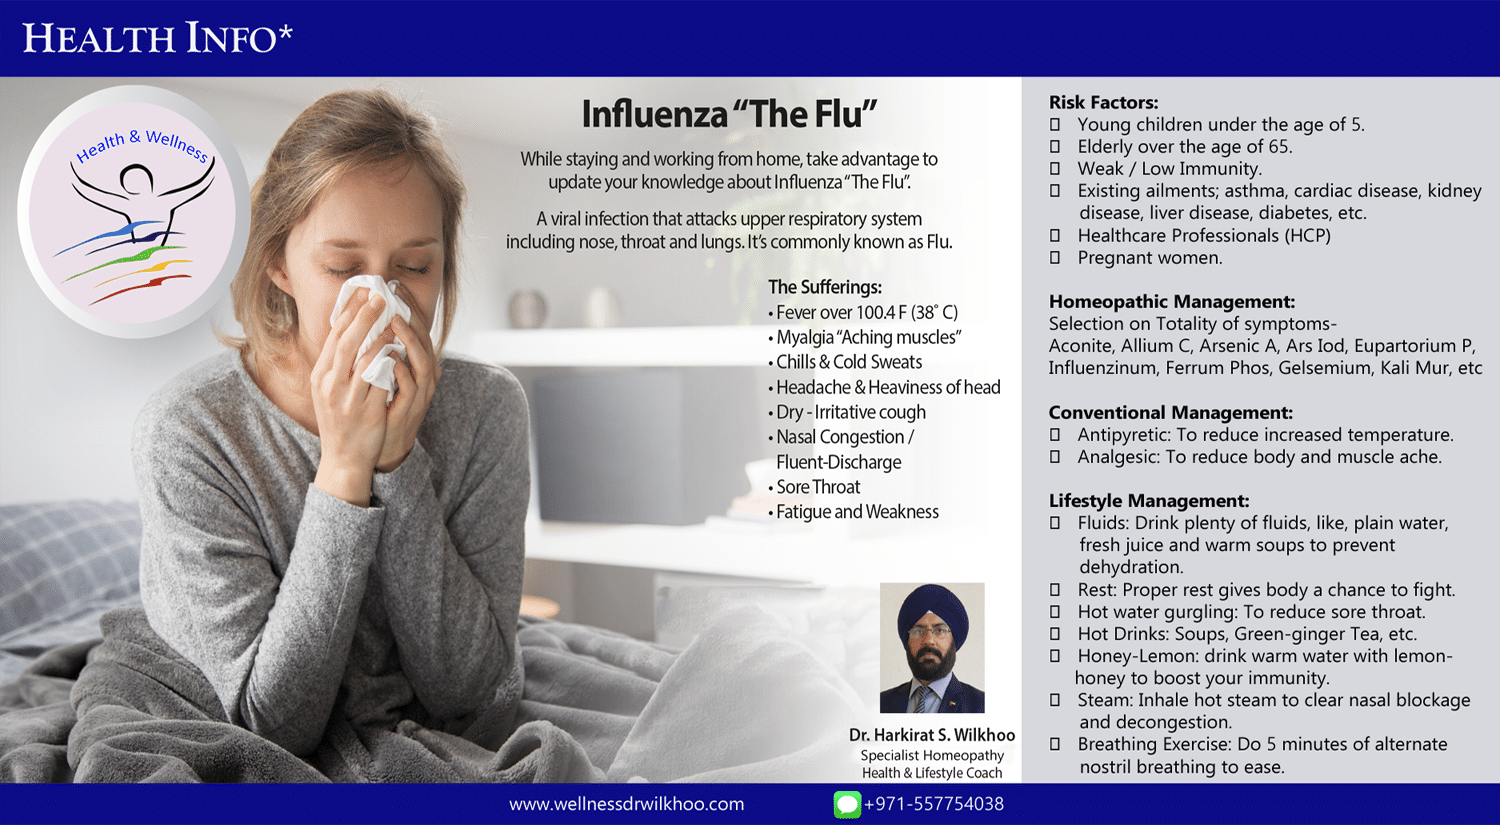 Flu "The Influenza"